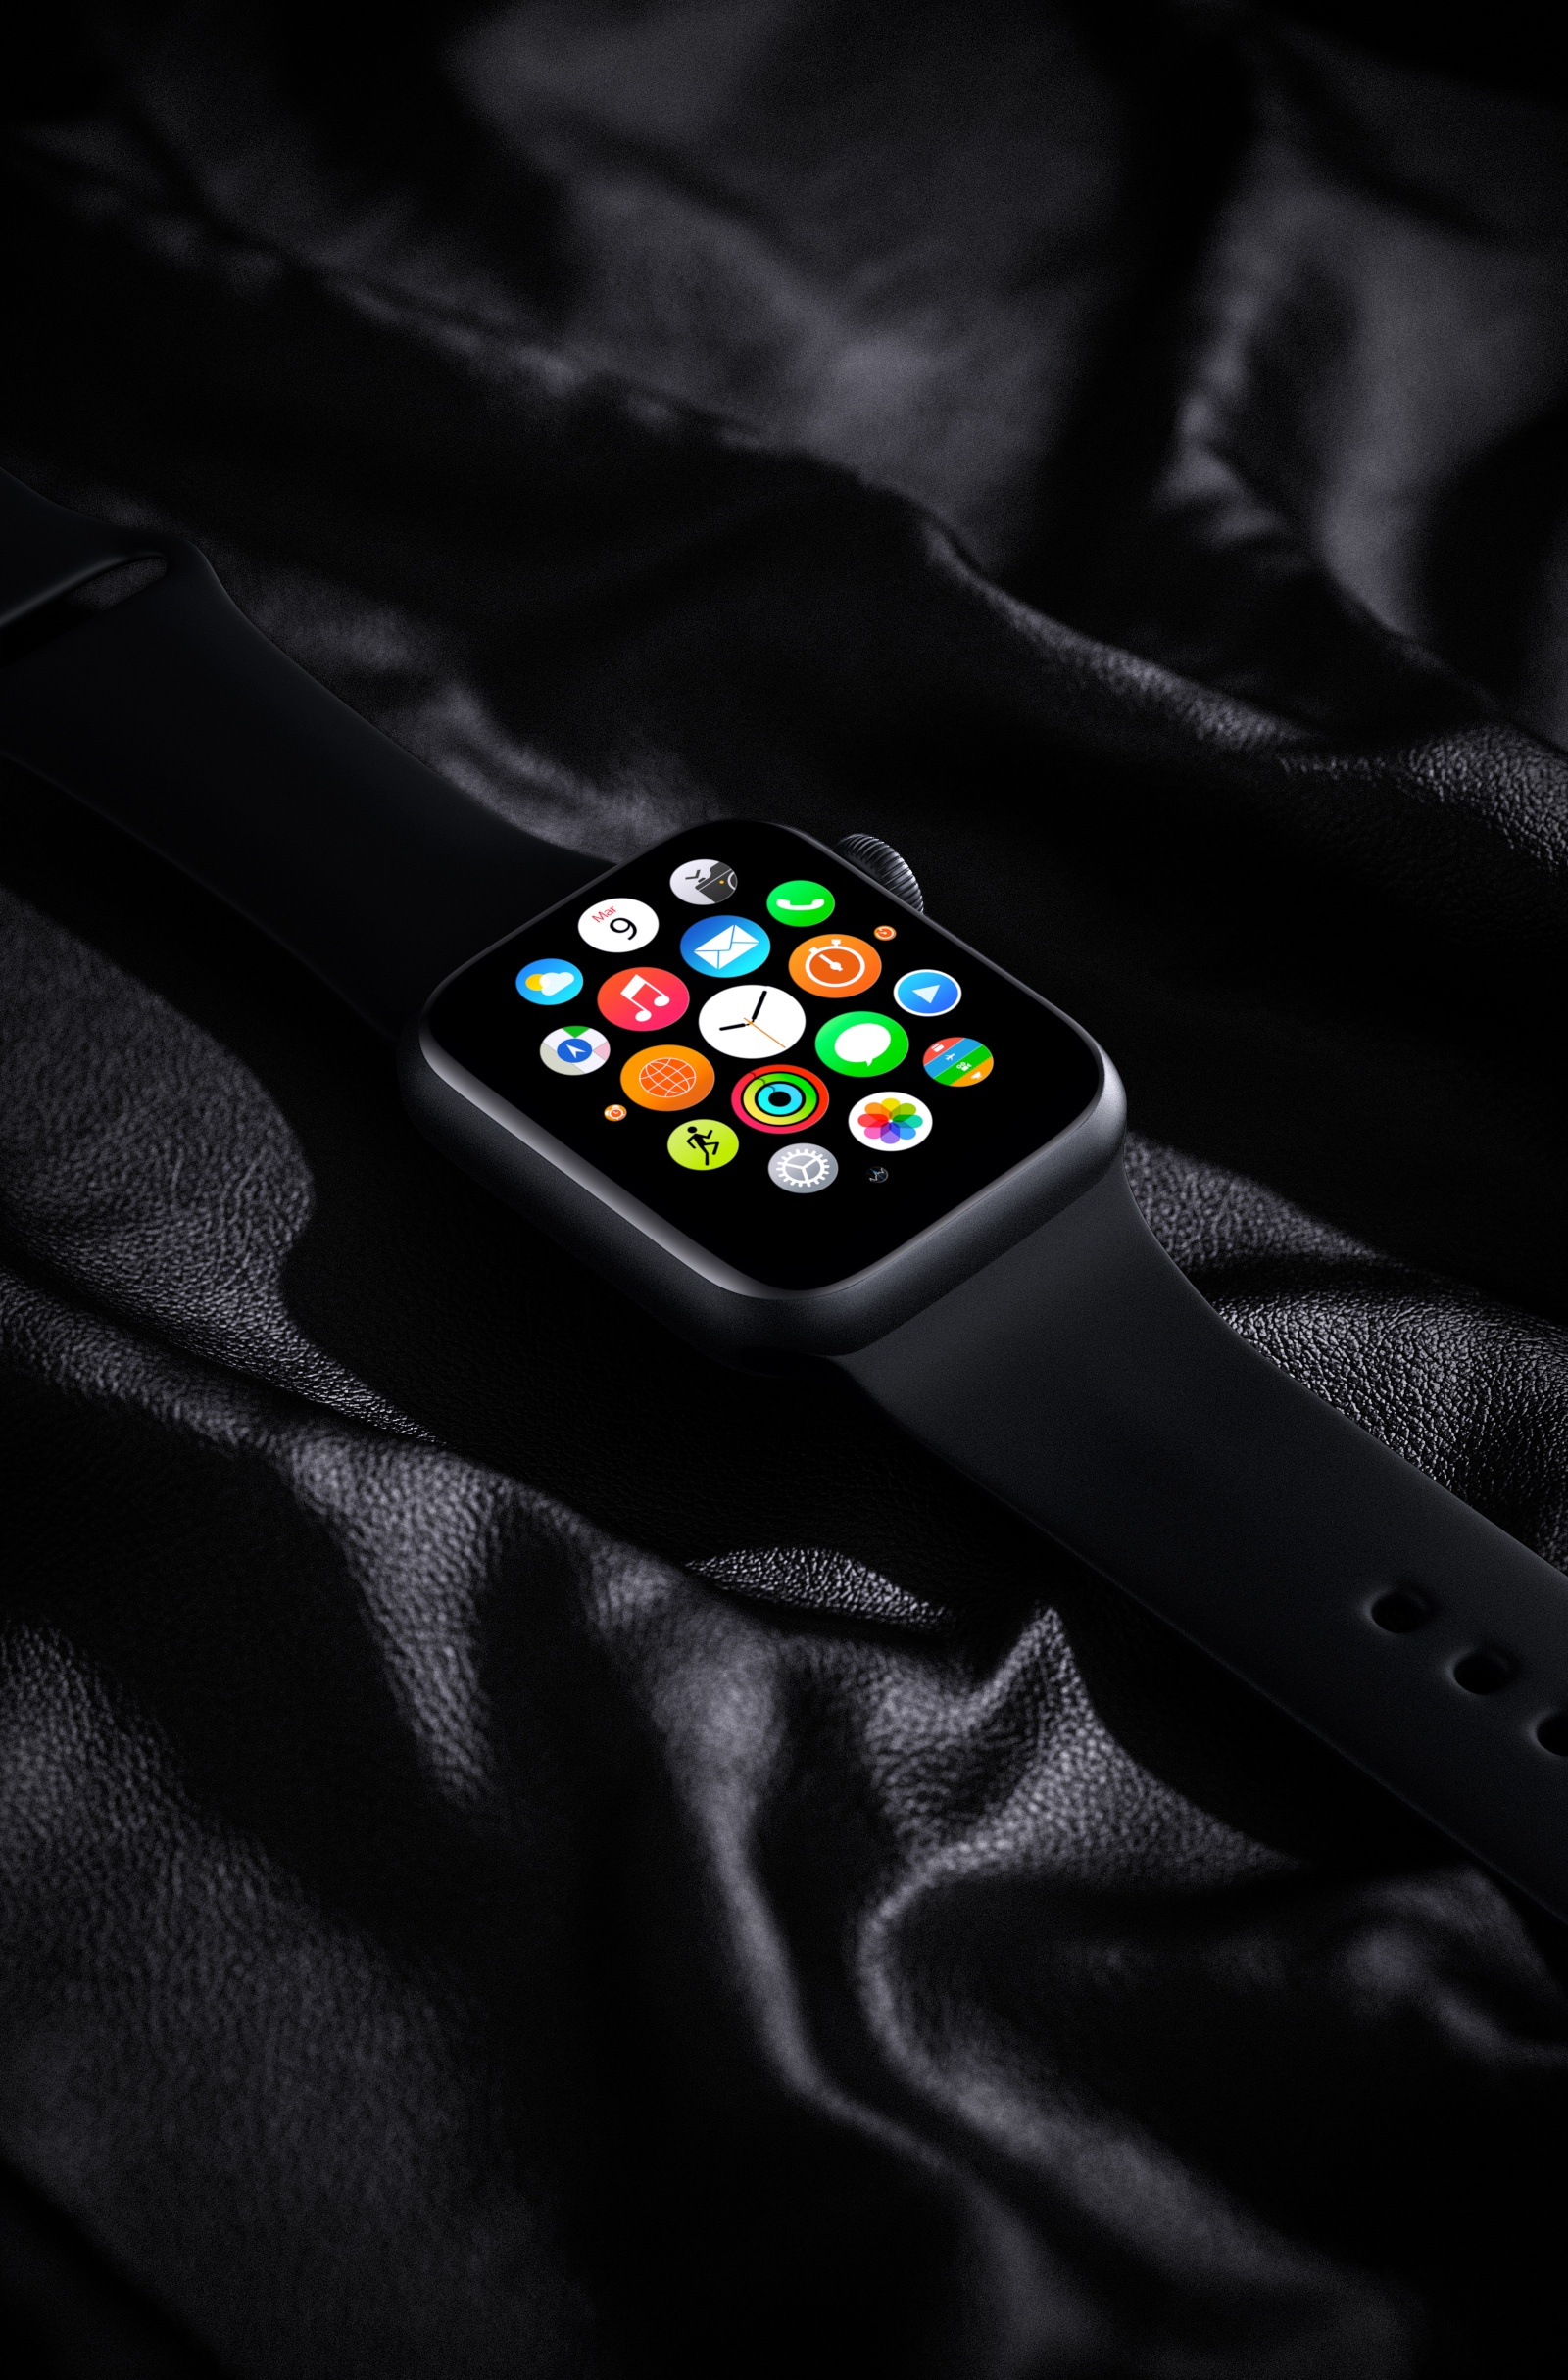 Apple Watch 手表 场景图 皮革 布料 模型 源文件